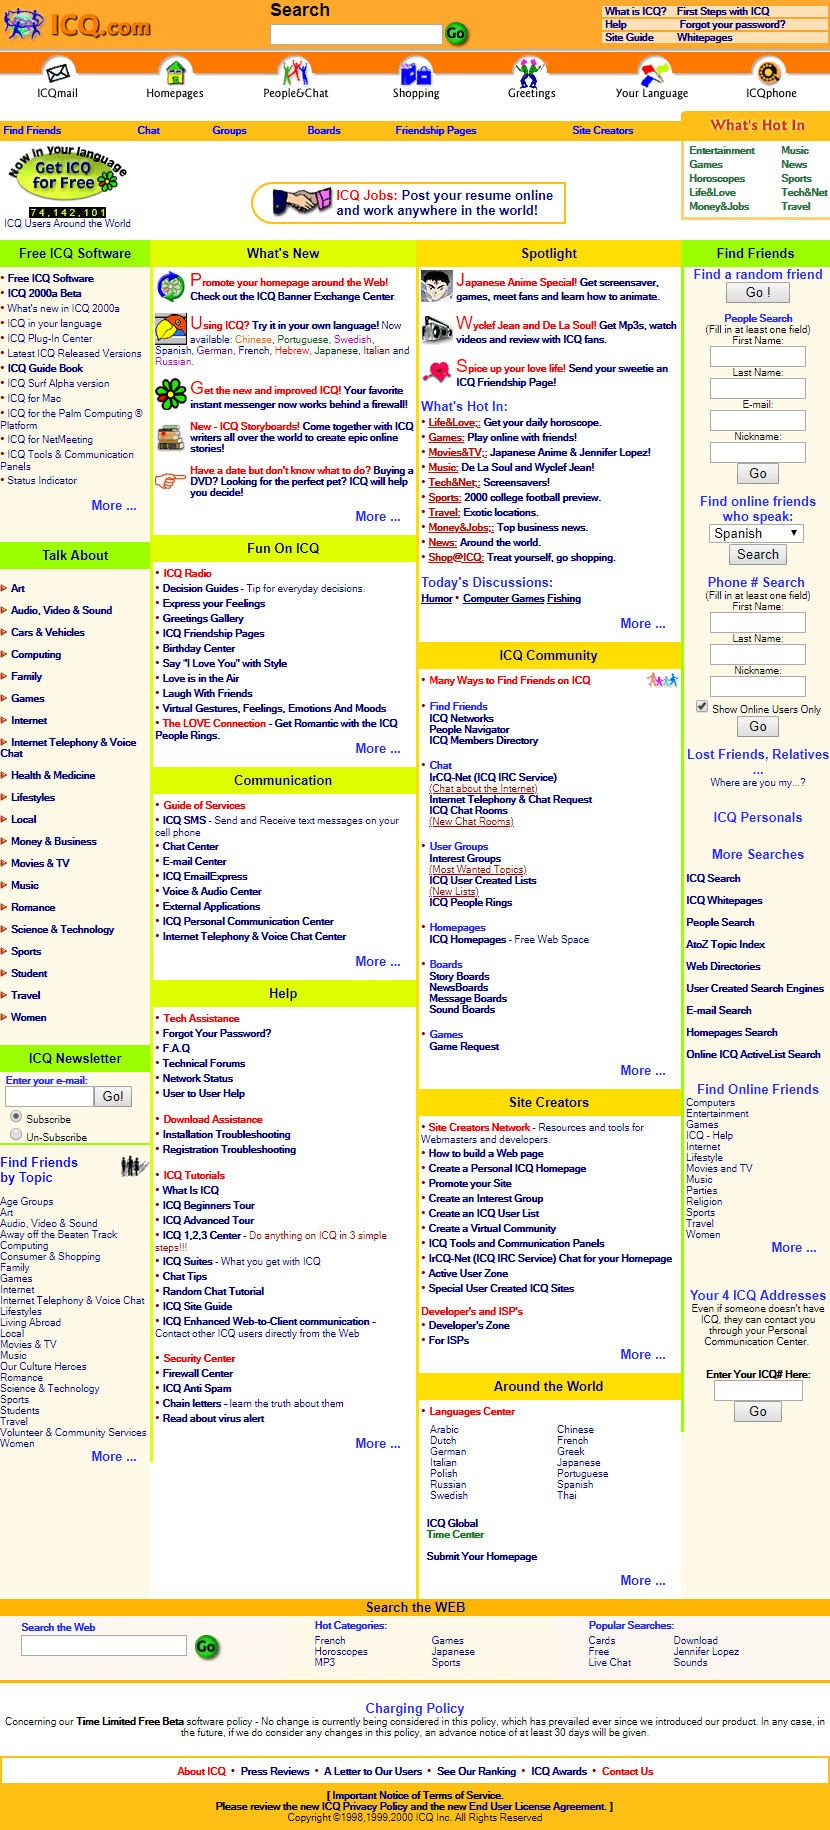 ICQ website in 2000